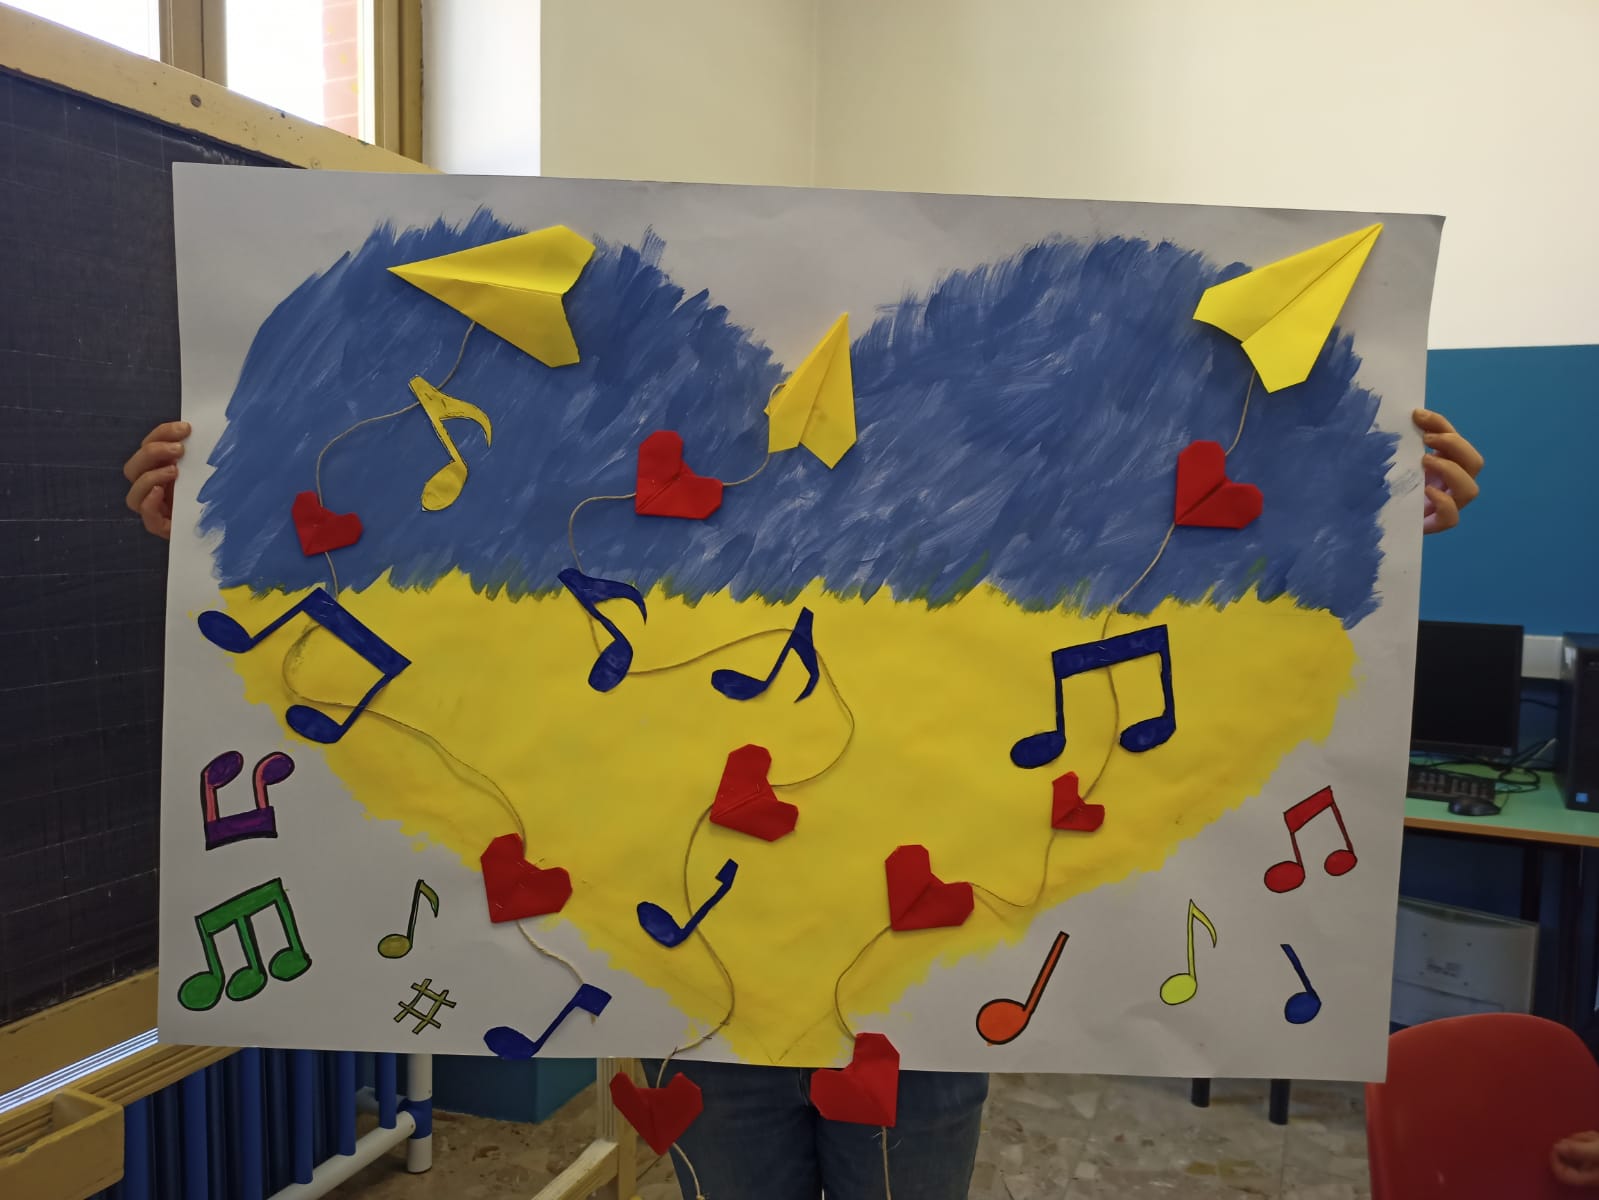 L’iniziativa “Un flauto per la pace” organizzata per raccogliere fondi a favore dei profughi ucraini